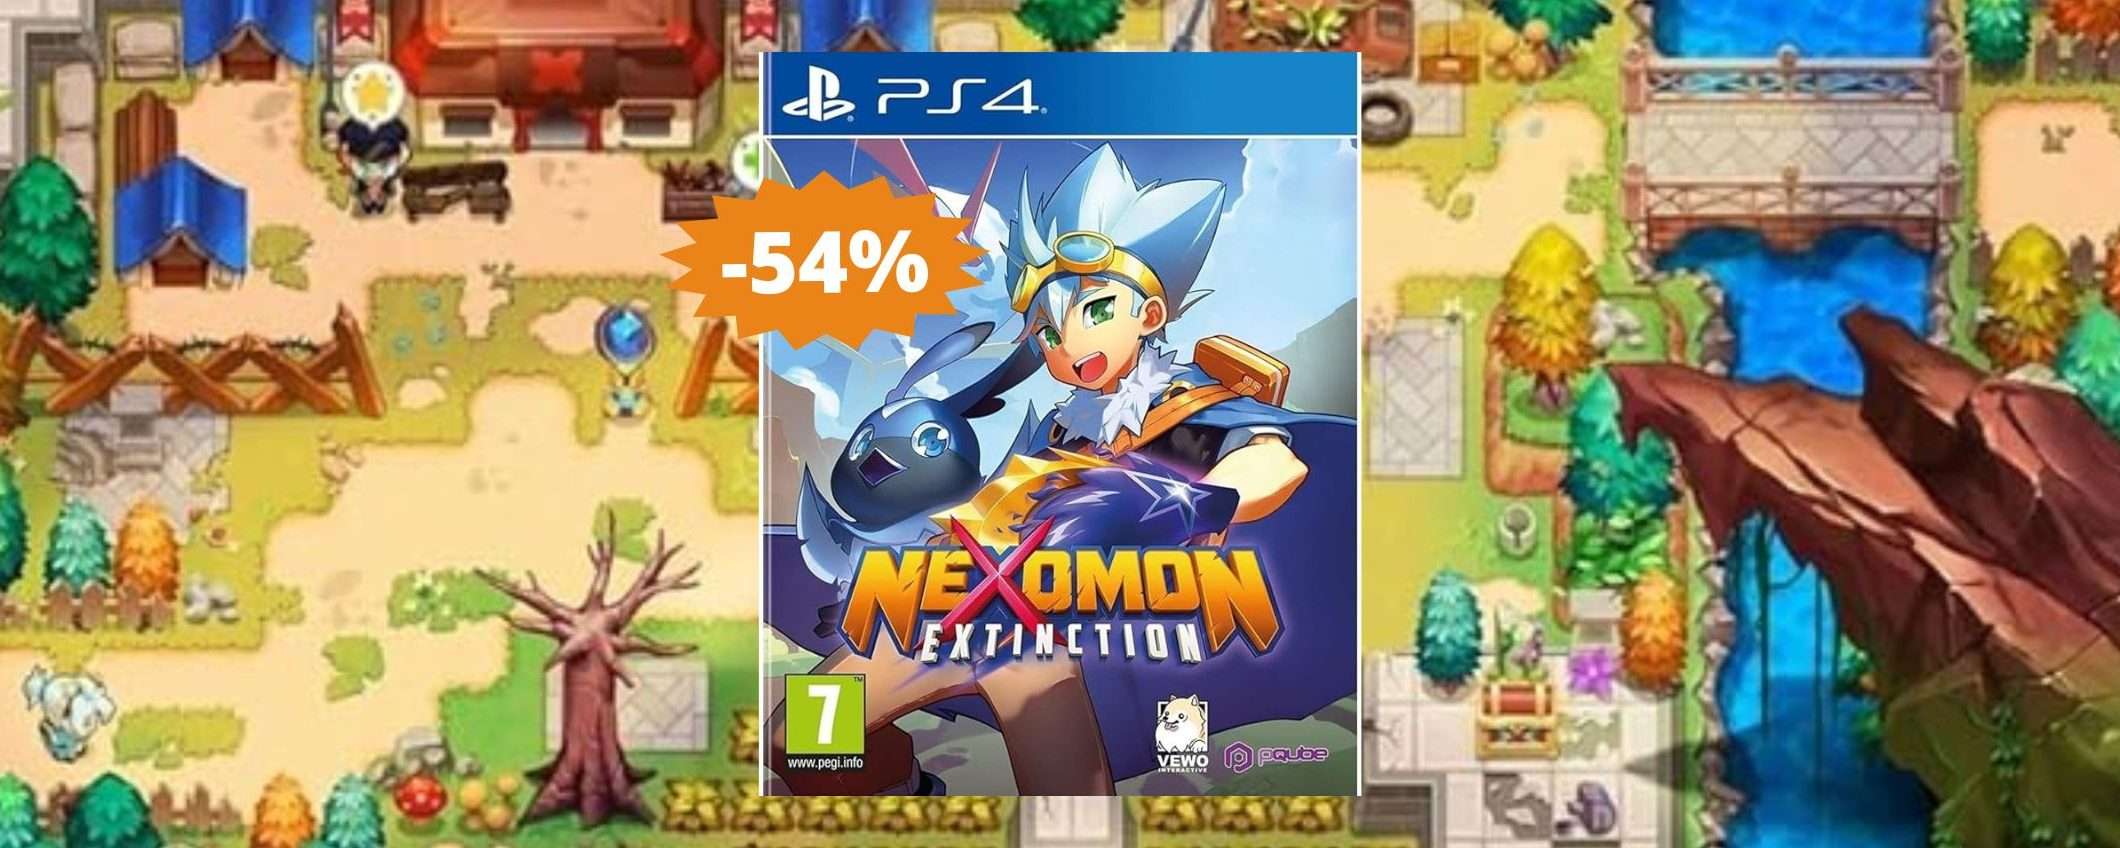 Nexomon Extinction per PS4: CROLLO del prezzo su Amazon (-54%)